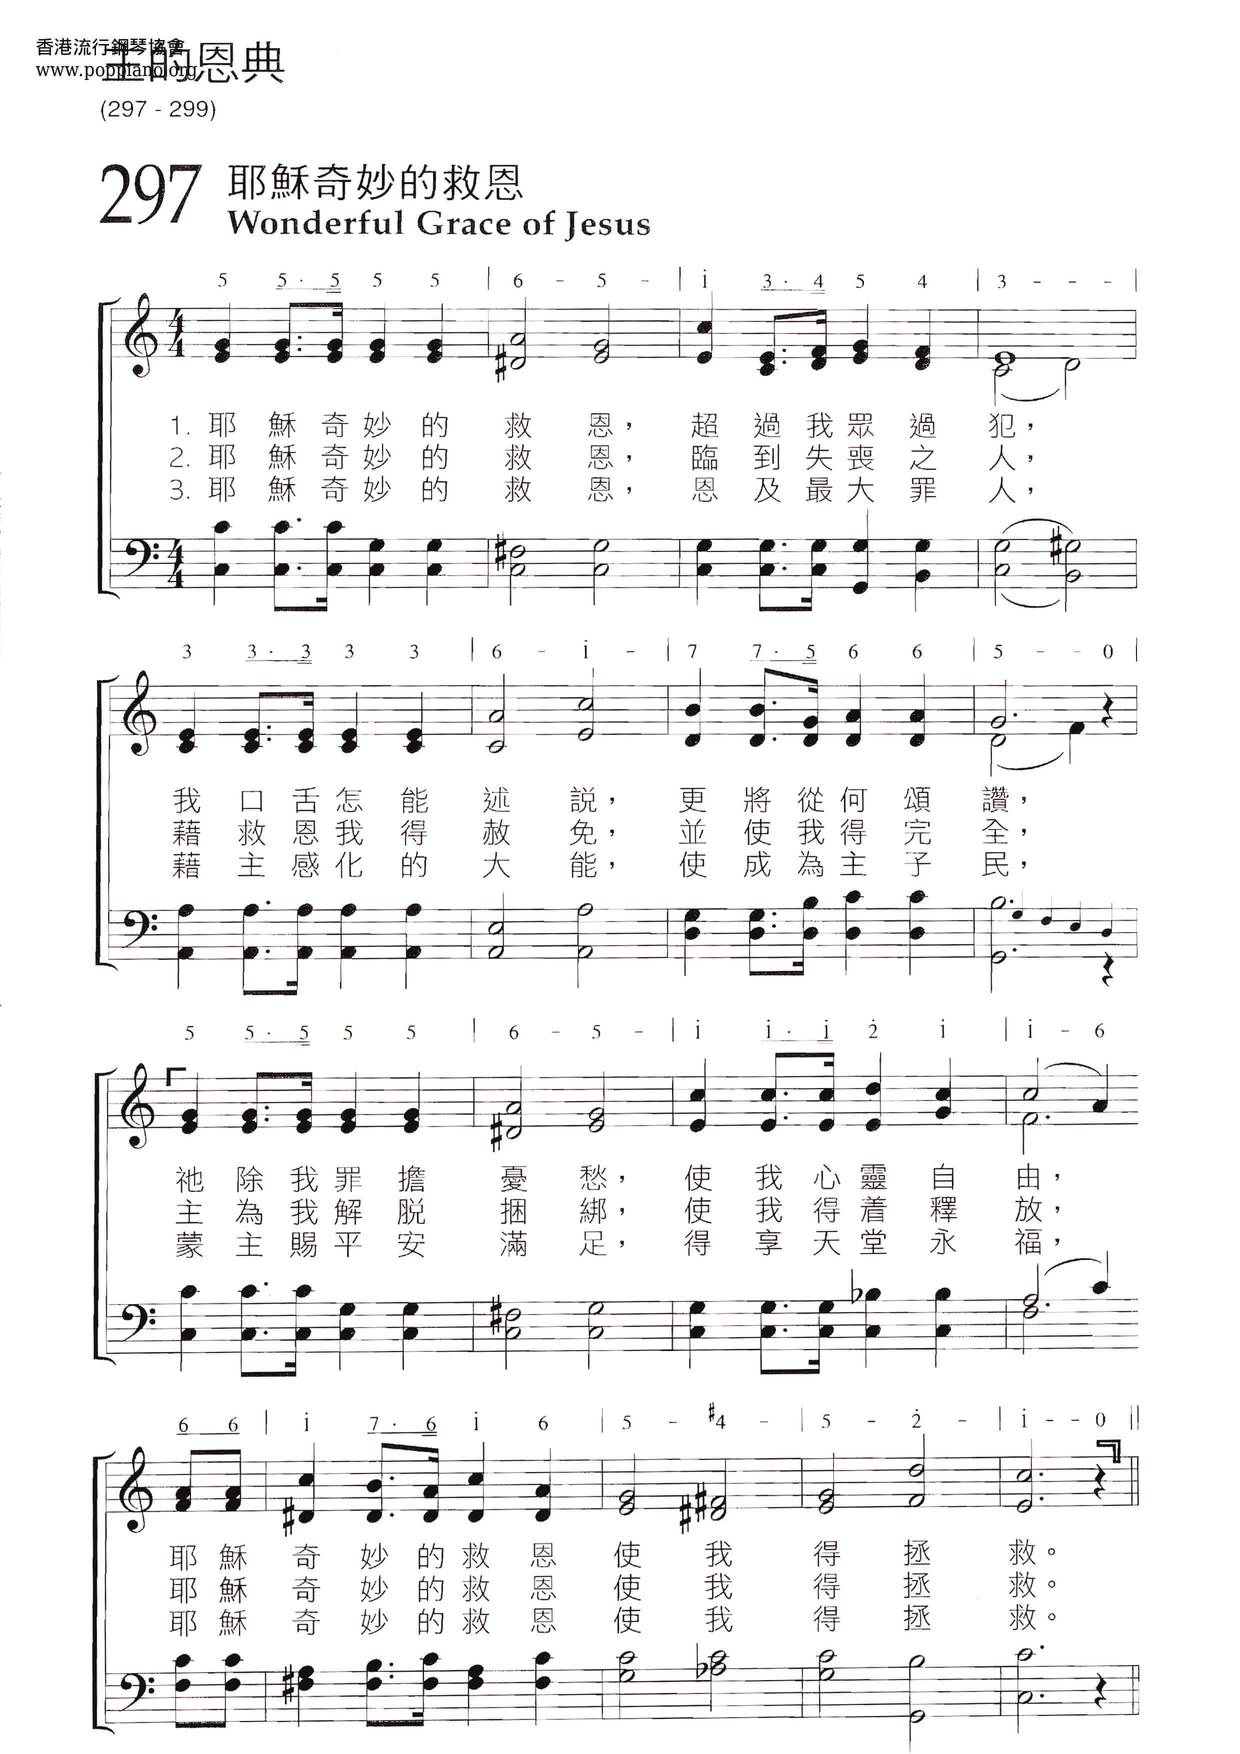 诗歌 耶稣奇妙的救恩琴谱 五线谱pdf 香港流行钢琴协会琴谱下载